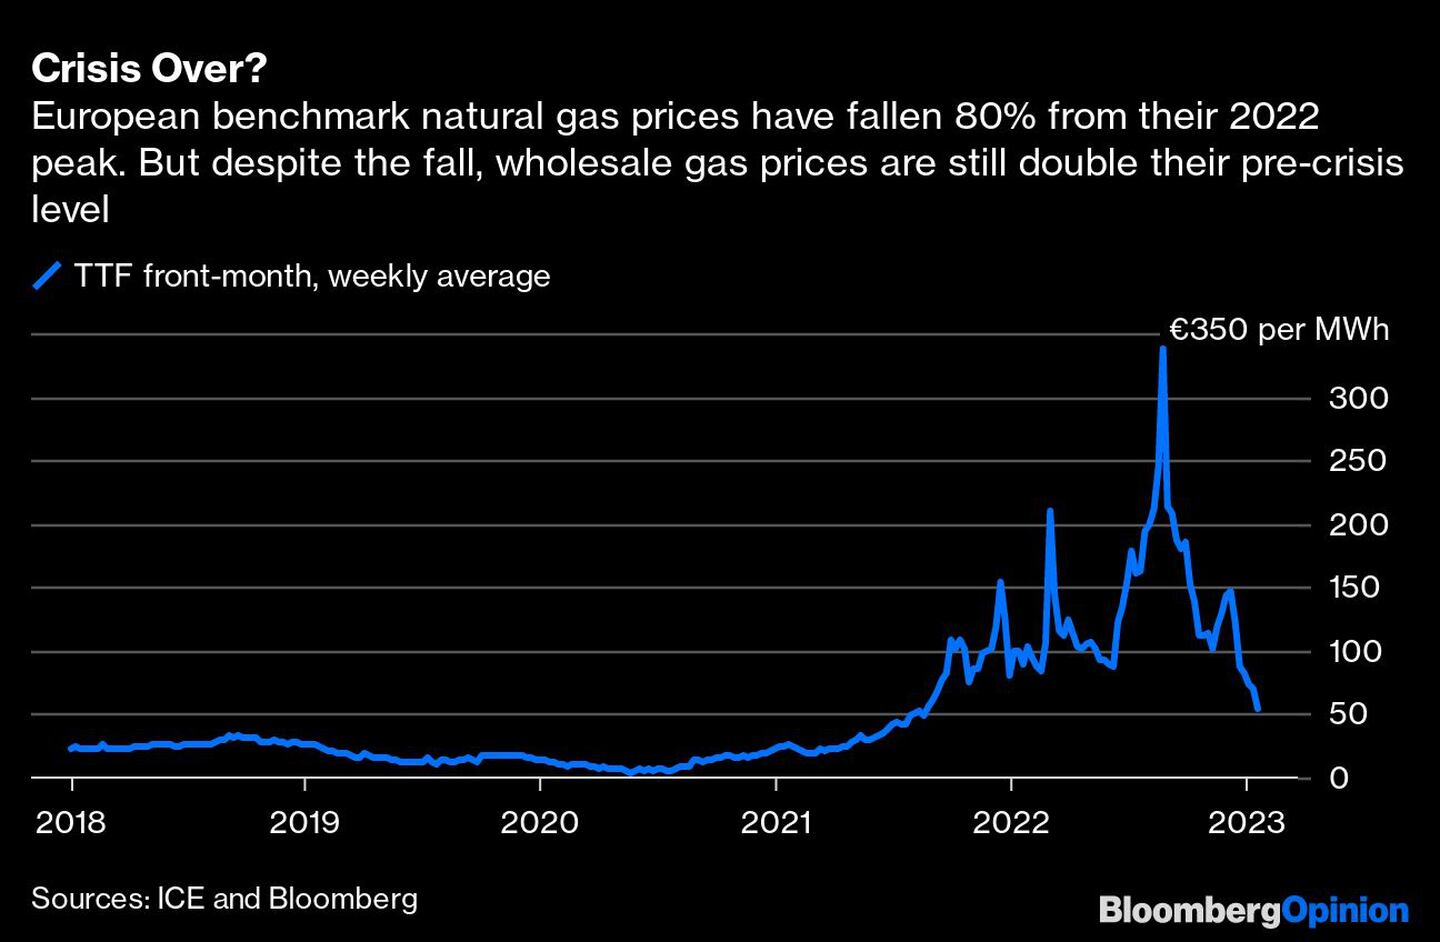 Precios de referencia del gas natural en Europa han caído 80% desde su máximo de 2022. No obstante, los precios mayoristas siguen siendo el doble que los niveles previos a la crisisdfd